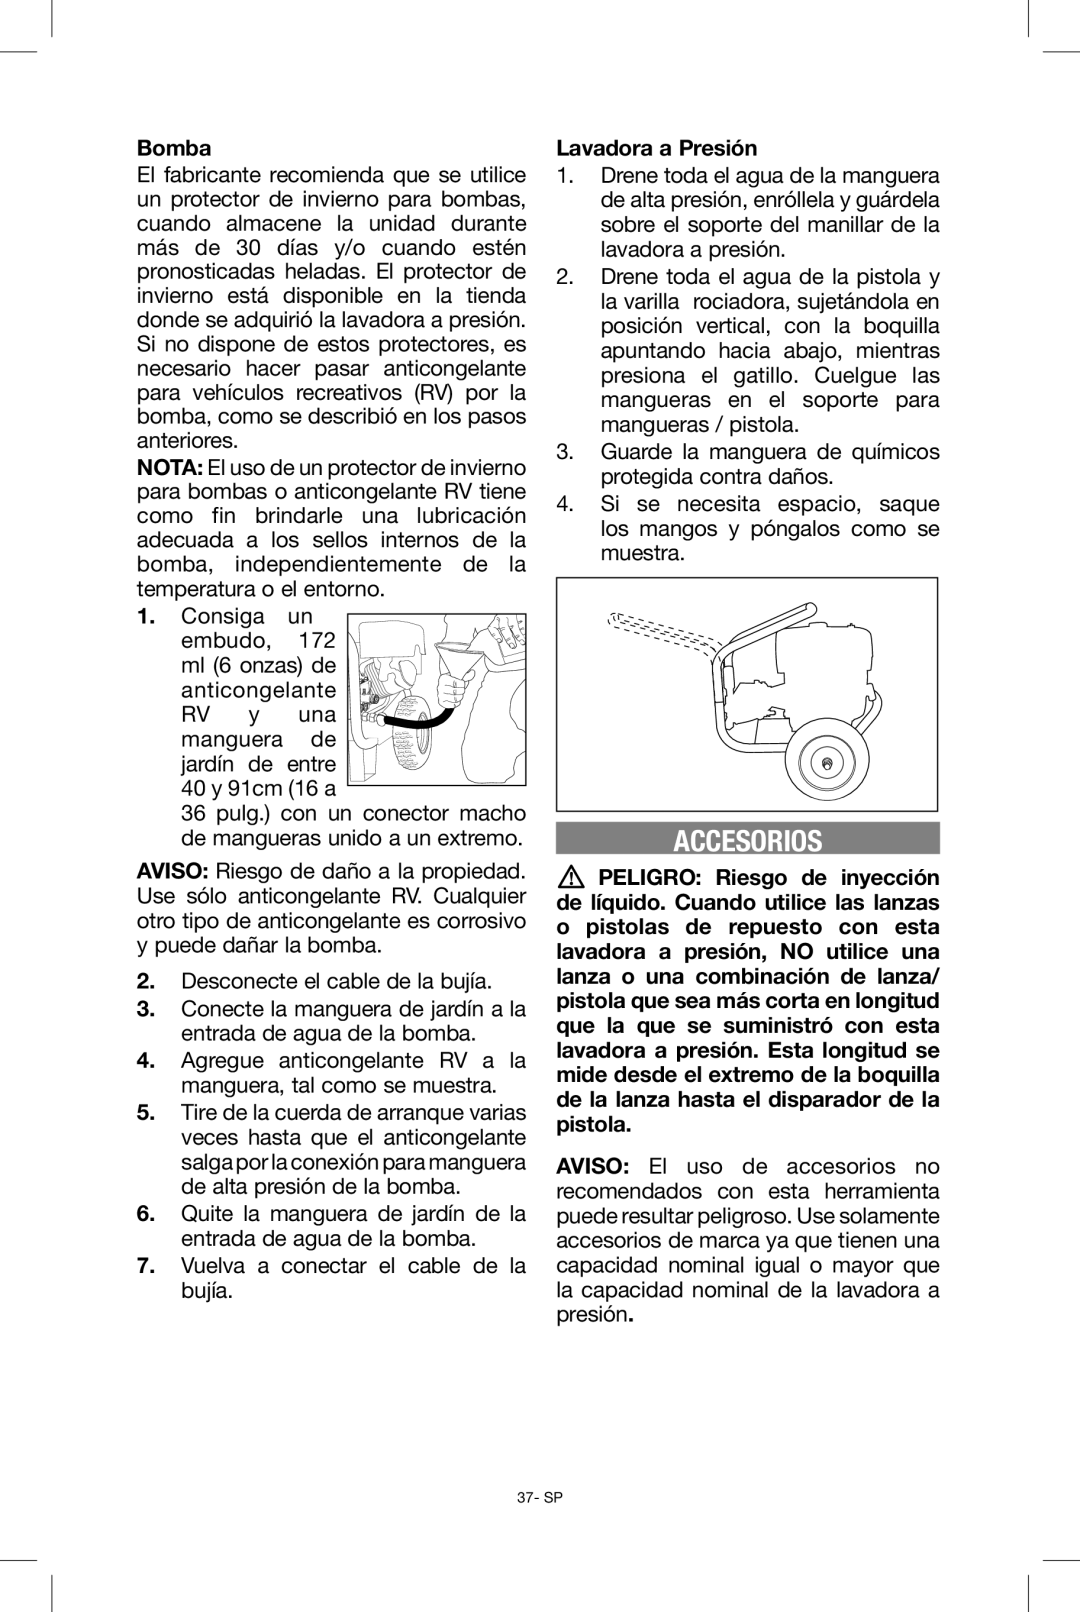 Black & Decker BDP2600 instruction manual Accesorios, Lavadora a Presión 